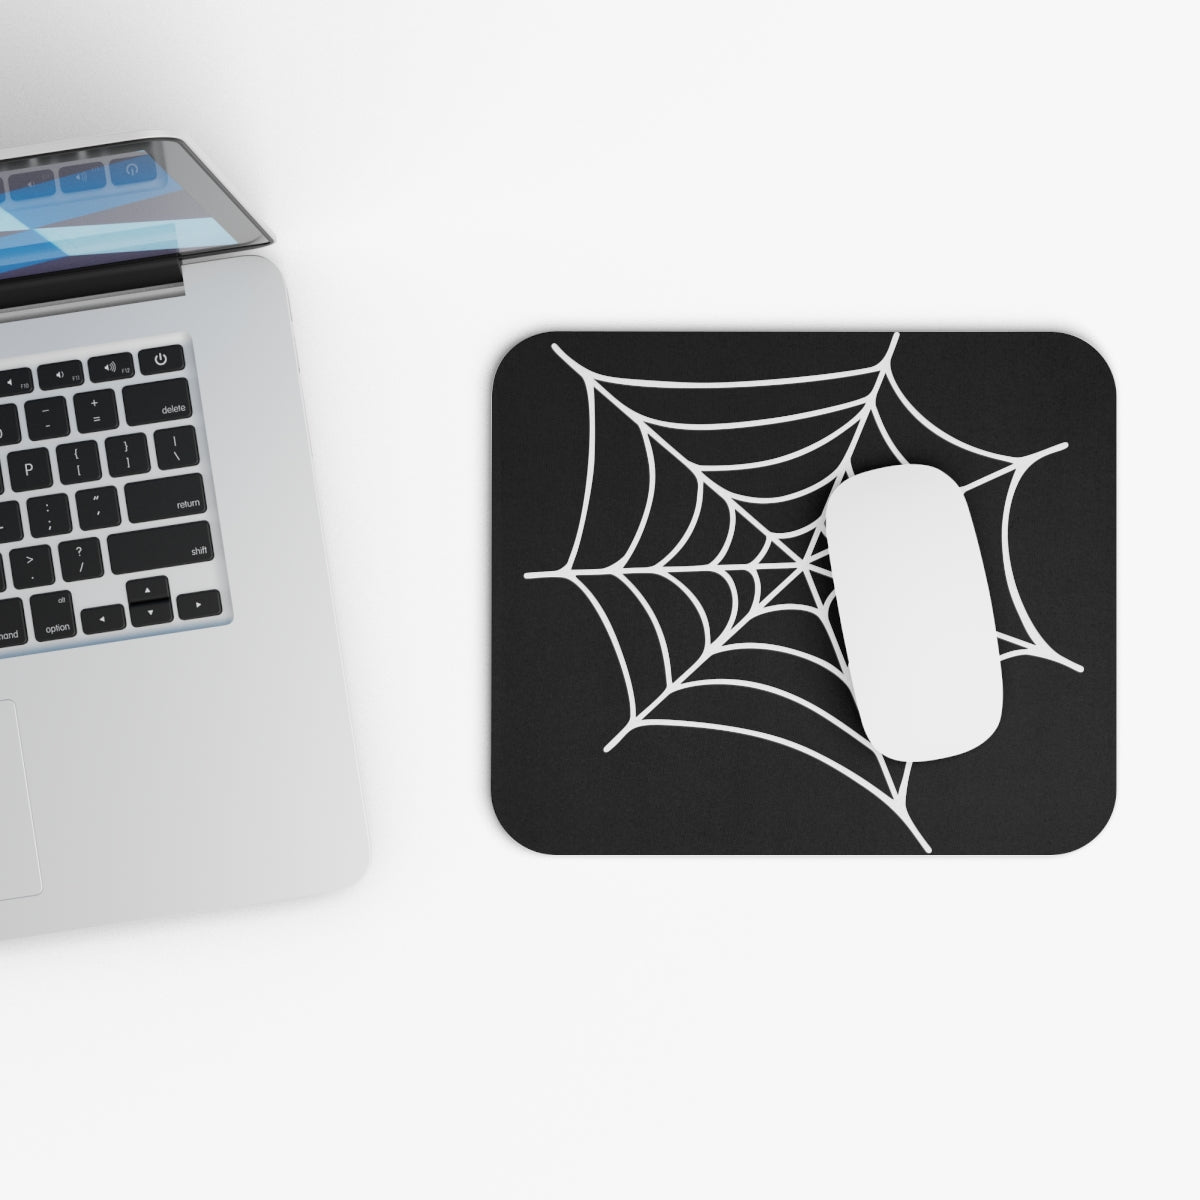 Spider web - Mouse pad - Developer / Programmer / Coder / Software Engineer / DevOps